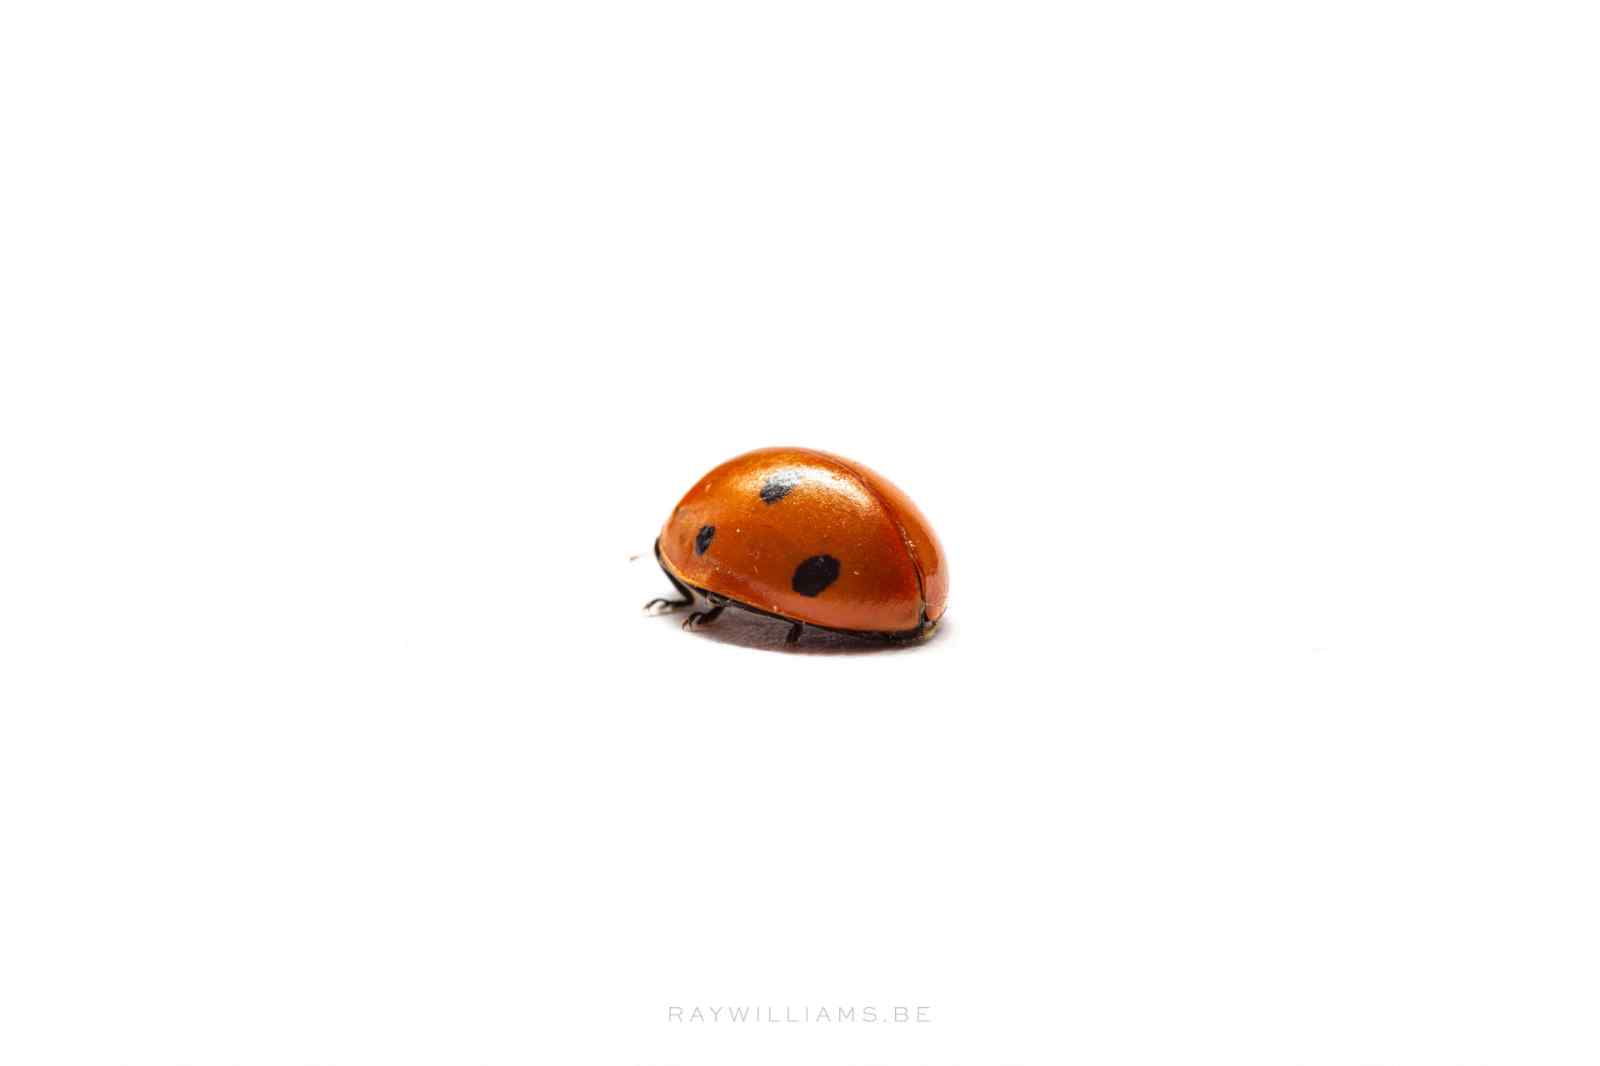 Ladybug just walking away